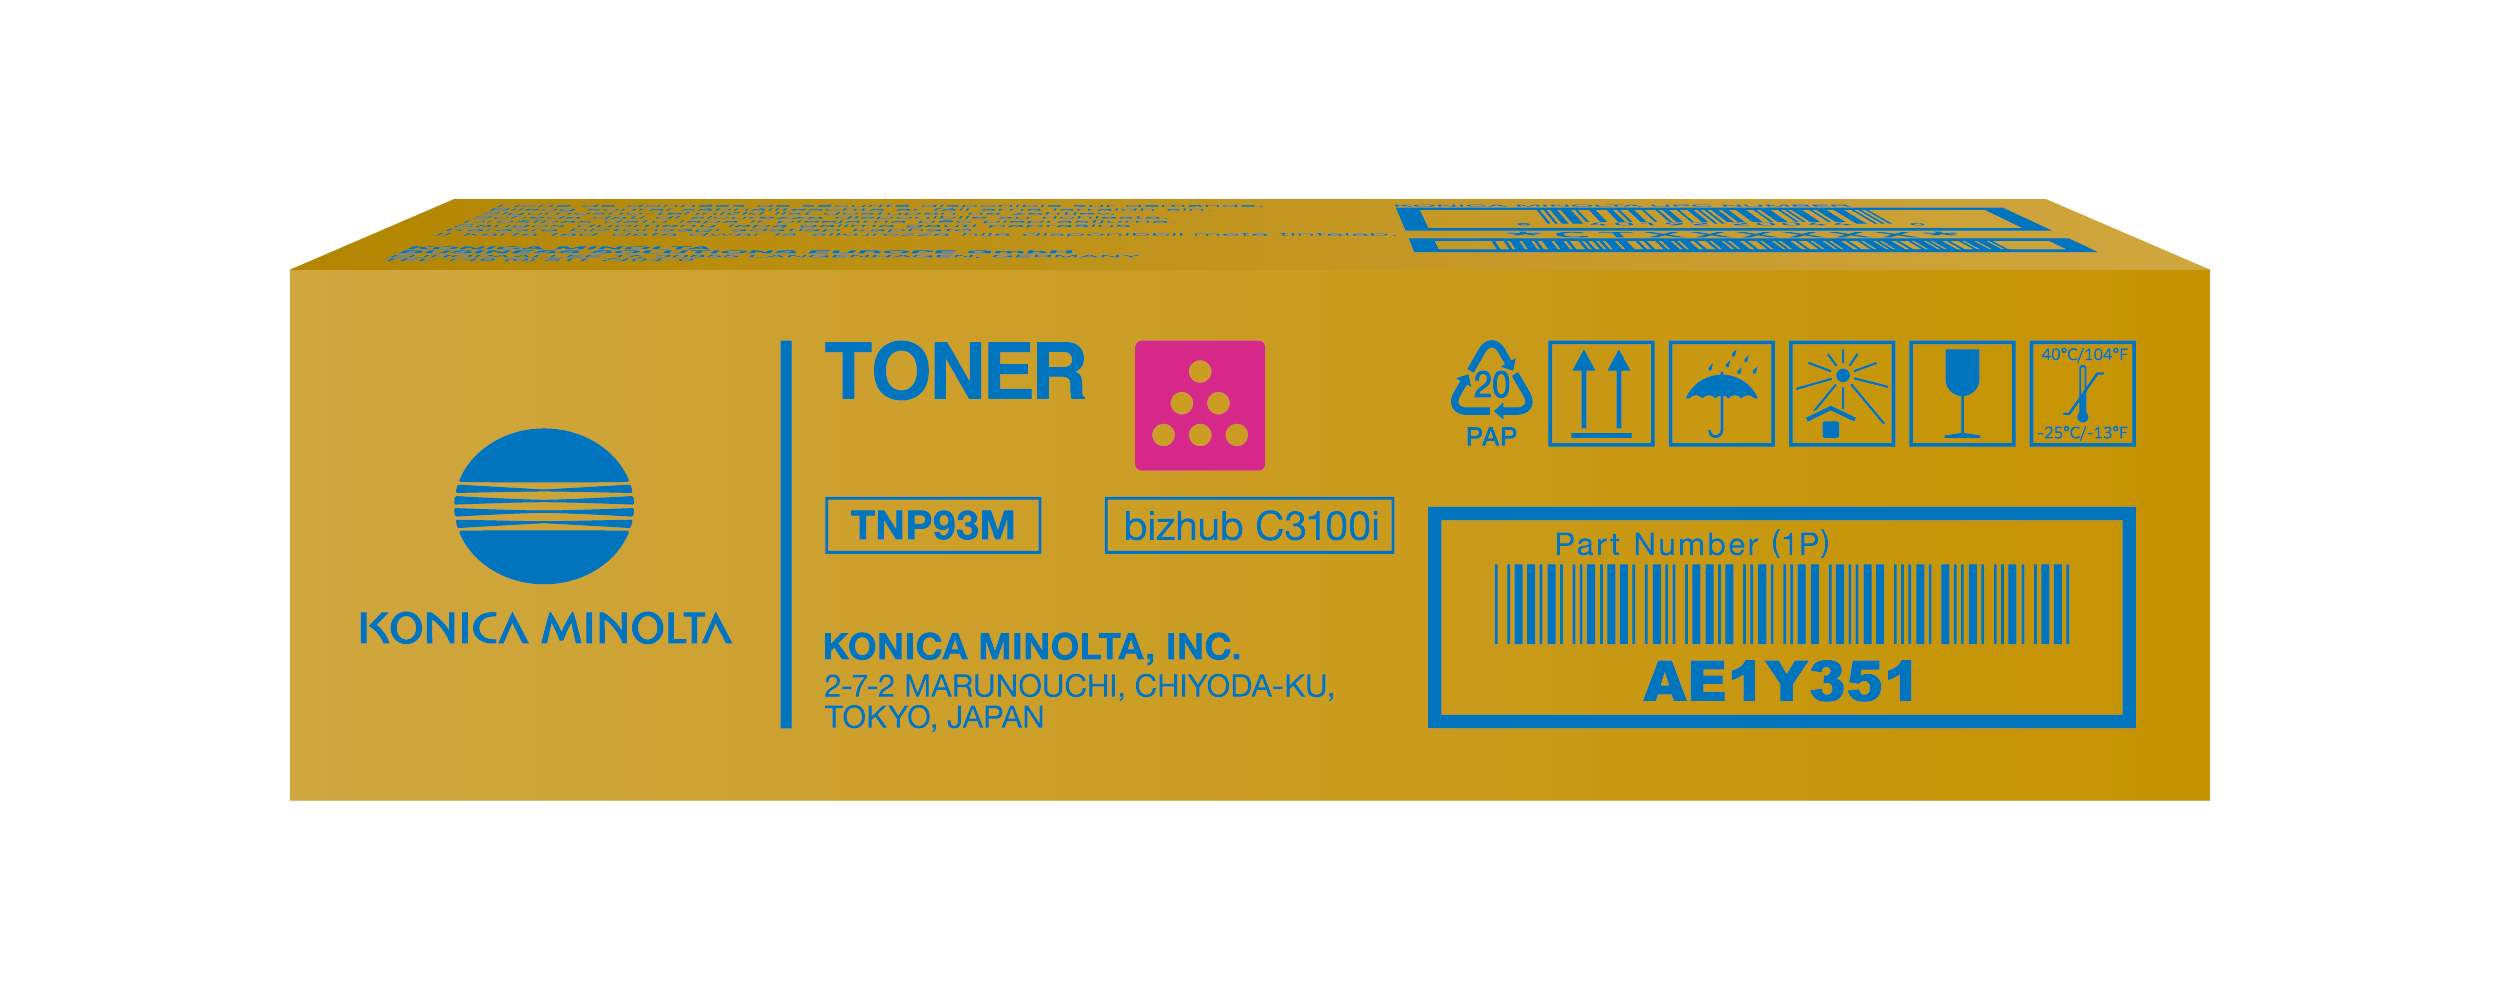 Toner magenta para bizhub C3100i - TNP93M